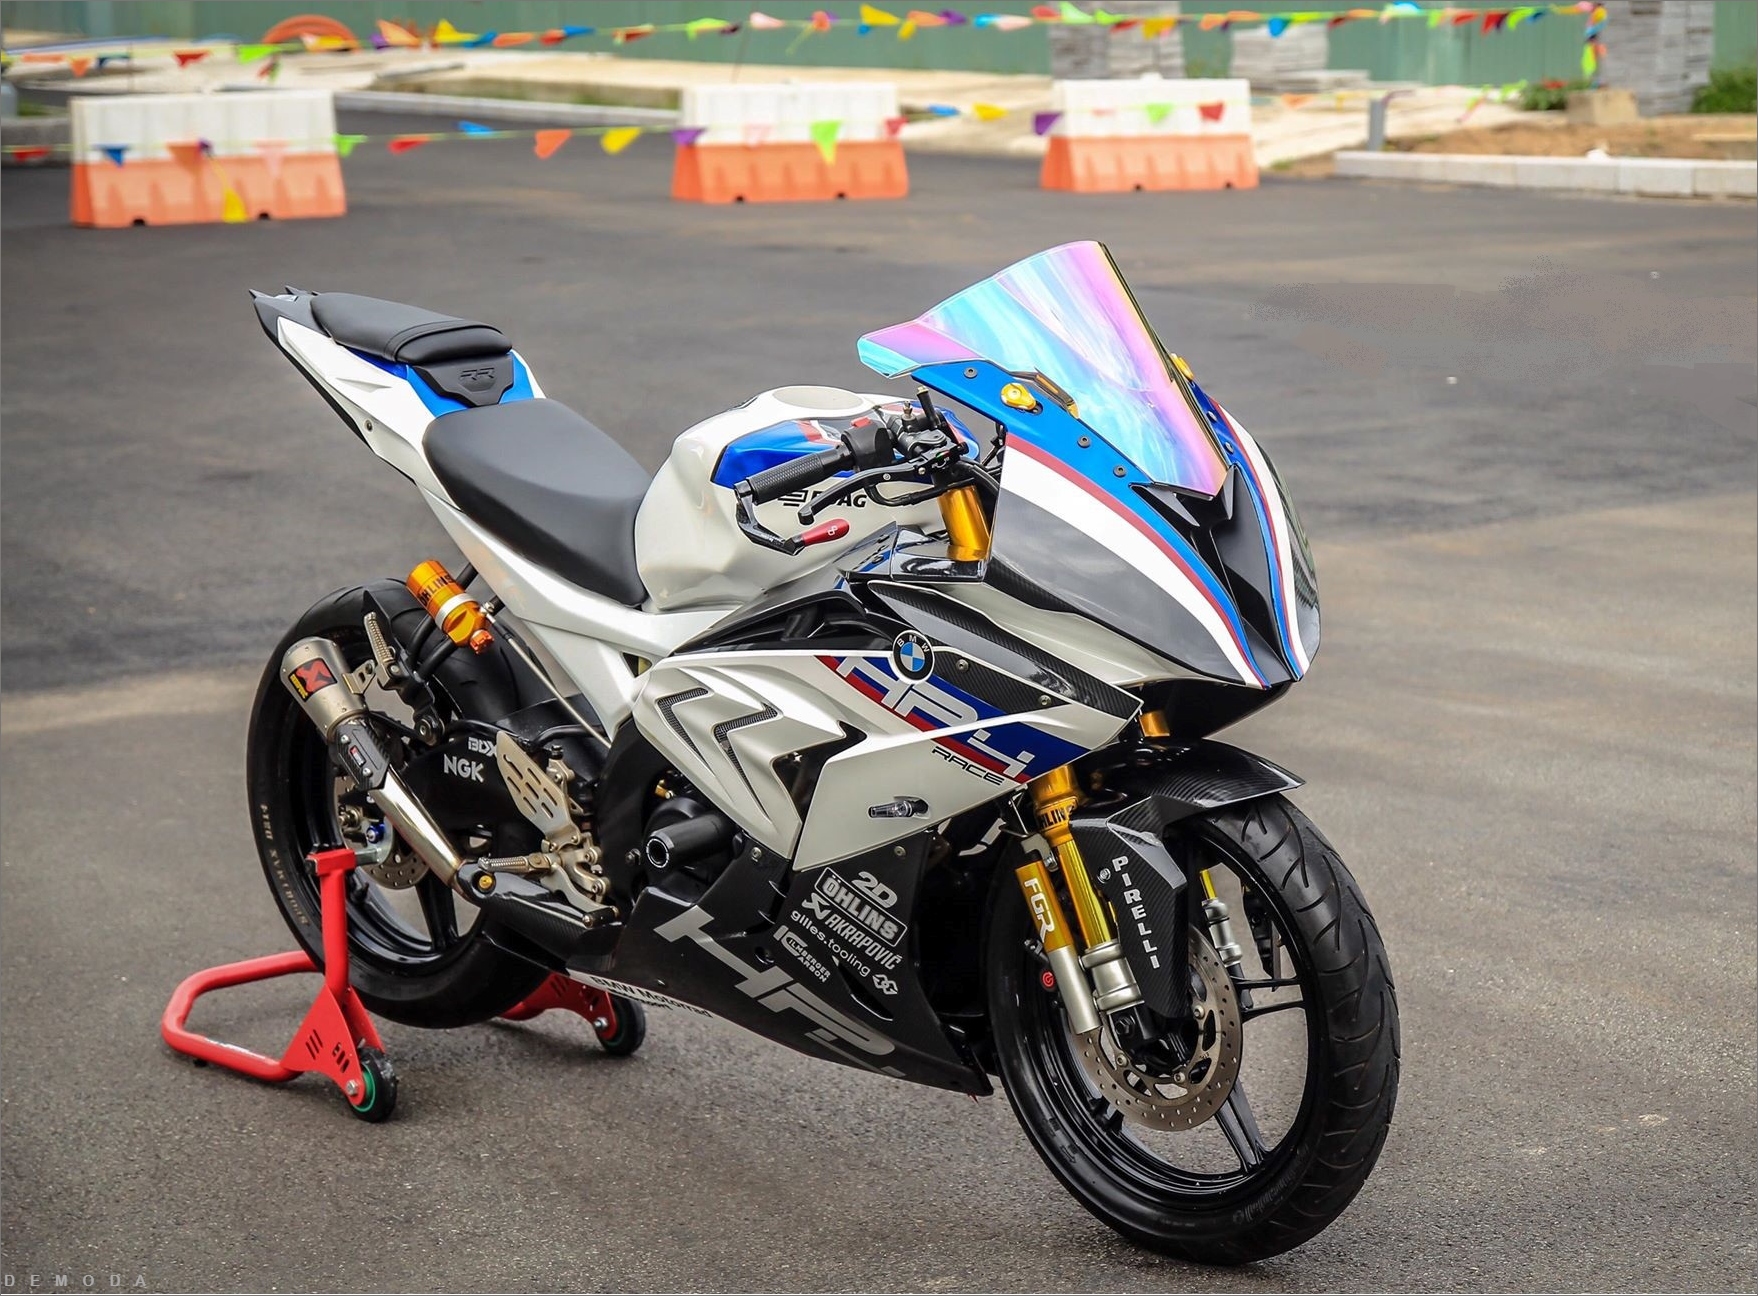 Yamaha YZF R15 V3 2018 Sportbike cỡ nhỏ sở hữu nhiều công nghệ đáng giá   Suzuki Wagon Club  Niềm đam mê giản dị